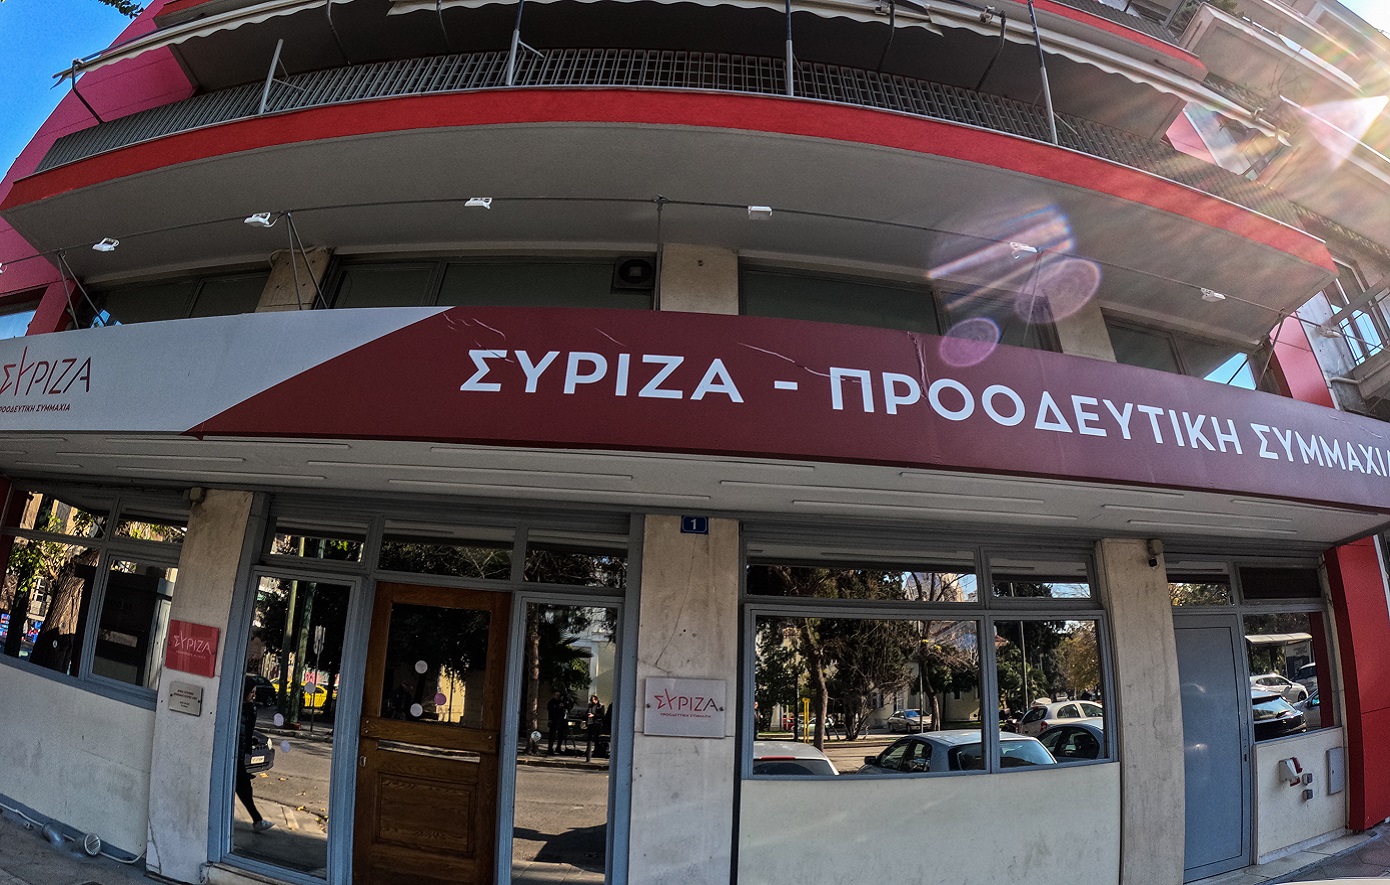 ΣΥΡΙΖΑ-ΠΣ: Ο Μαρινάκης καταδίκασε με δυσκολία και μισόλογα την ομοφοβική επίθεση Κούγια στον Κασσελάκη